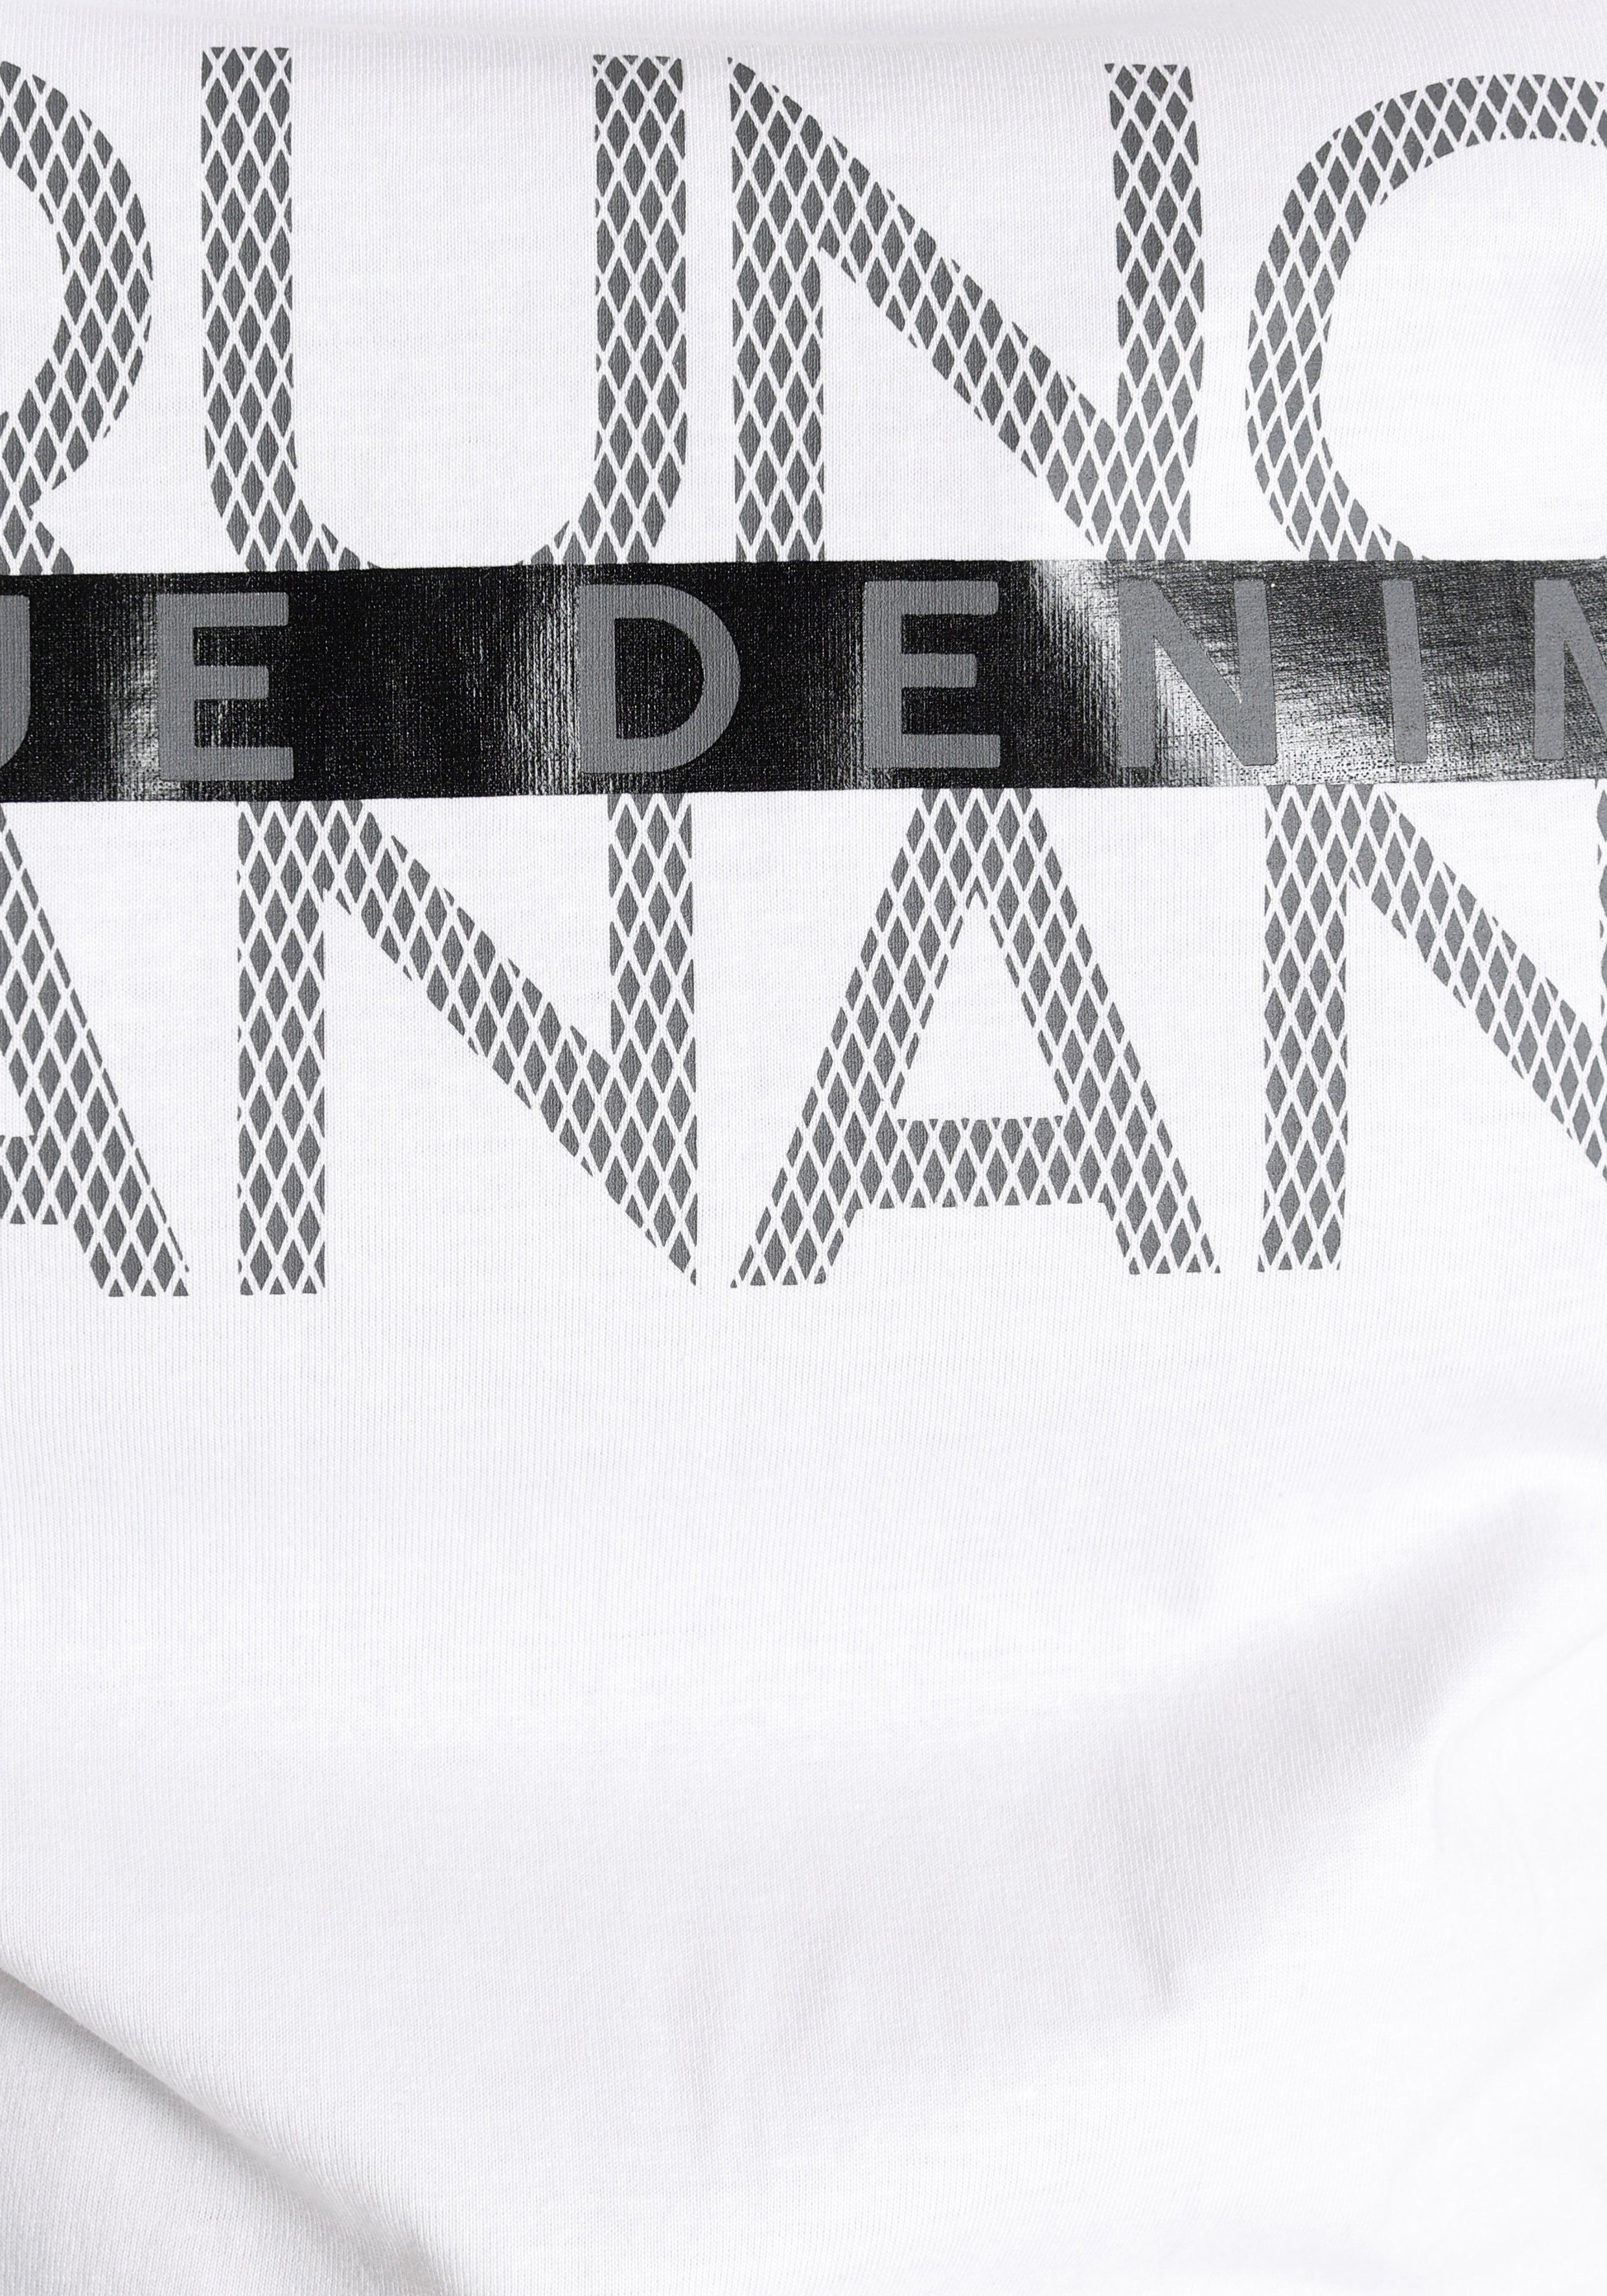 Bruno Banani T-Shirt mit glänzendem Print weiß